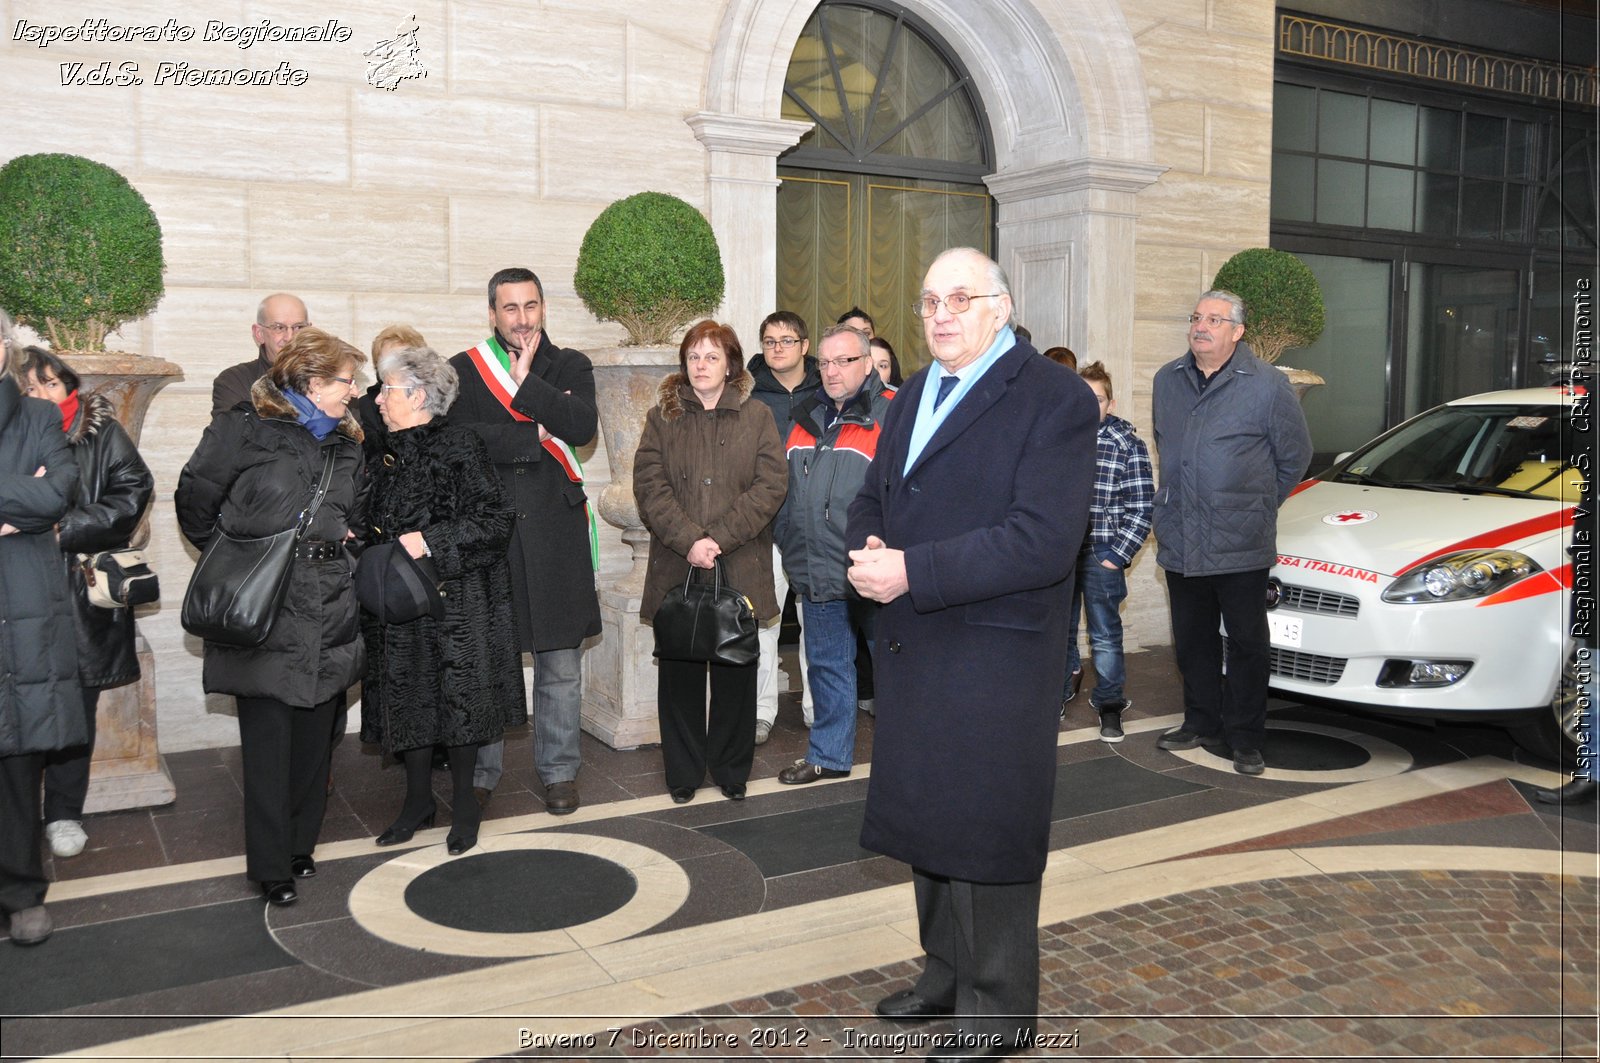 Baveno 7 Dicembre 2012 - Inaugurazione Mezzi - Croce Rossa Italiana - Ispettorato Regionale Volontari del Piemonte